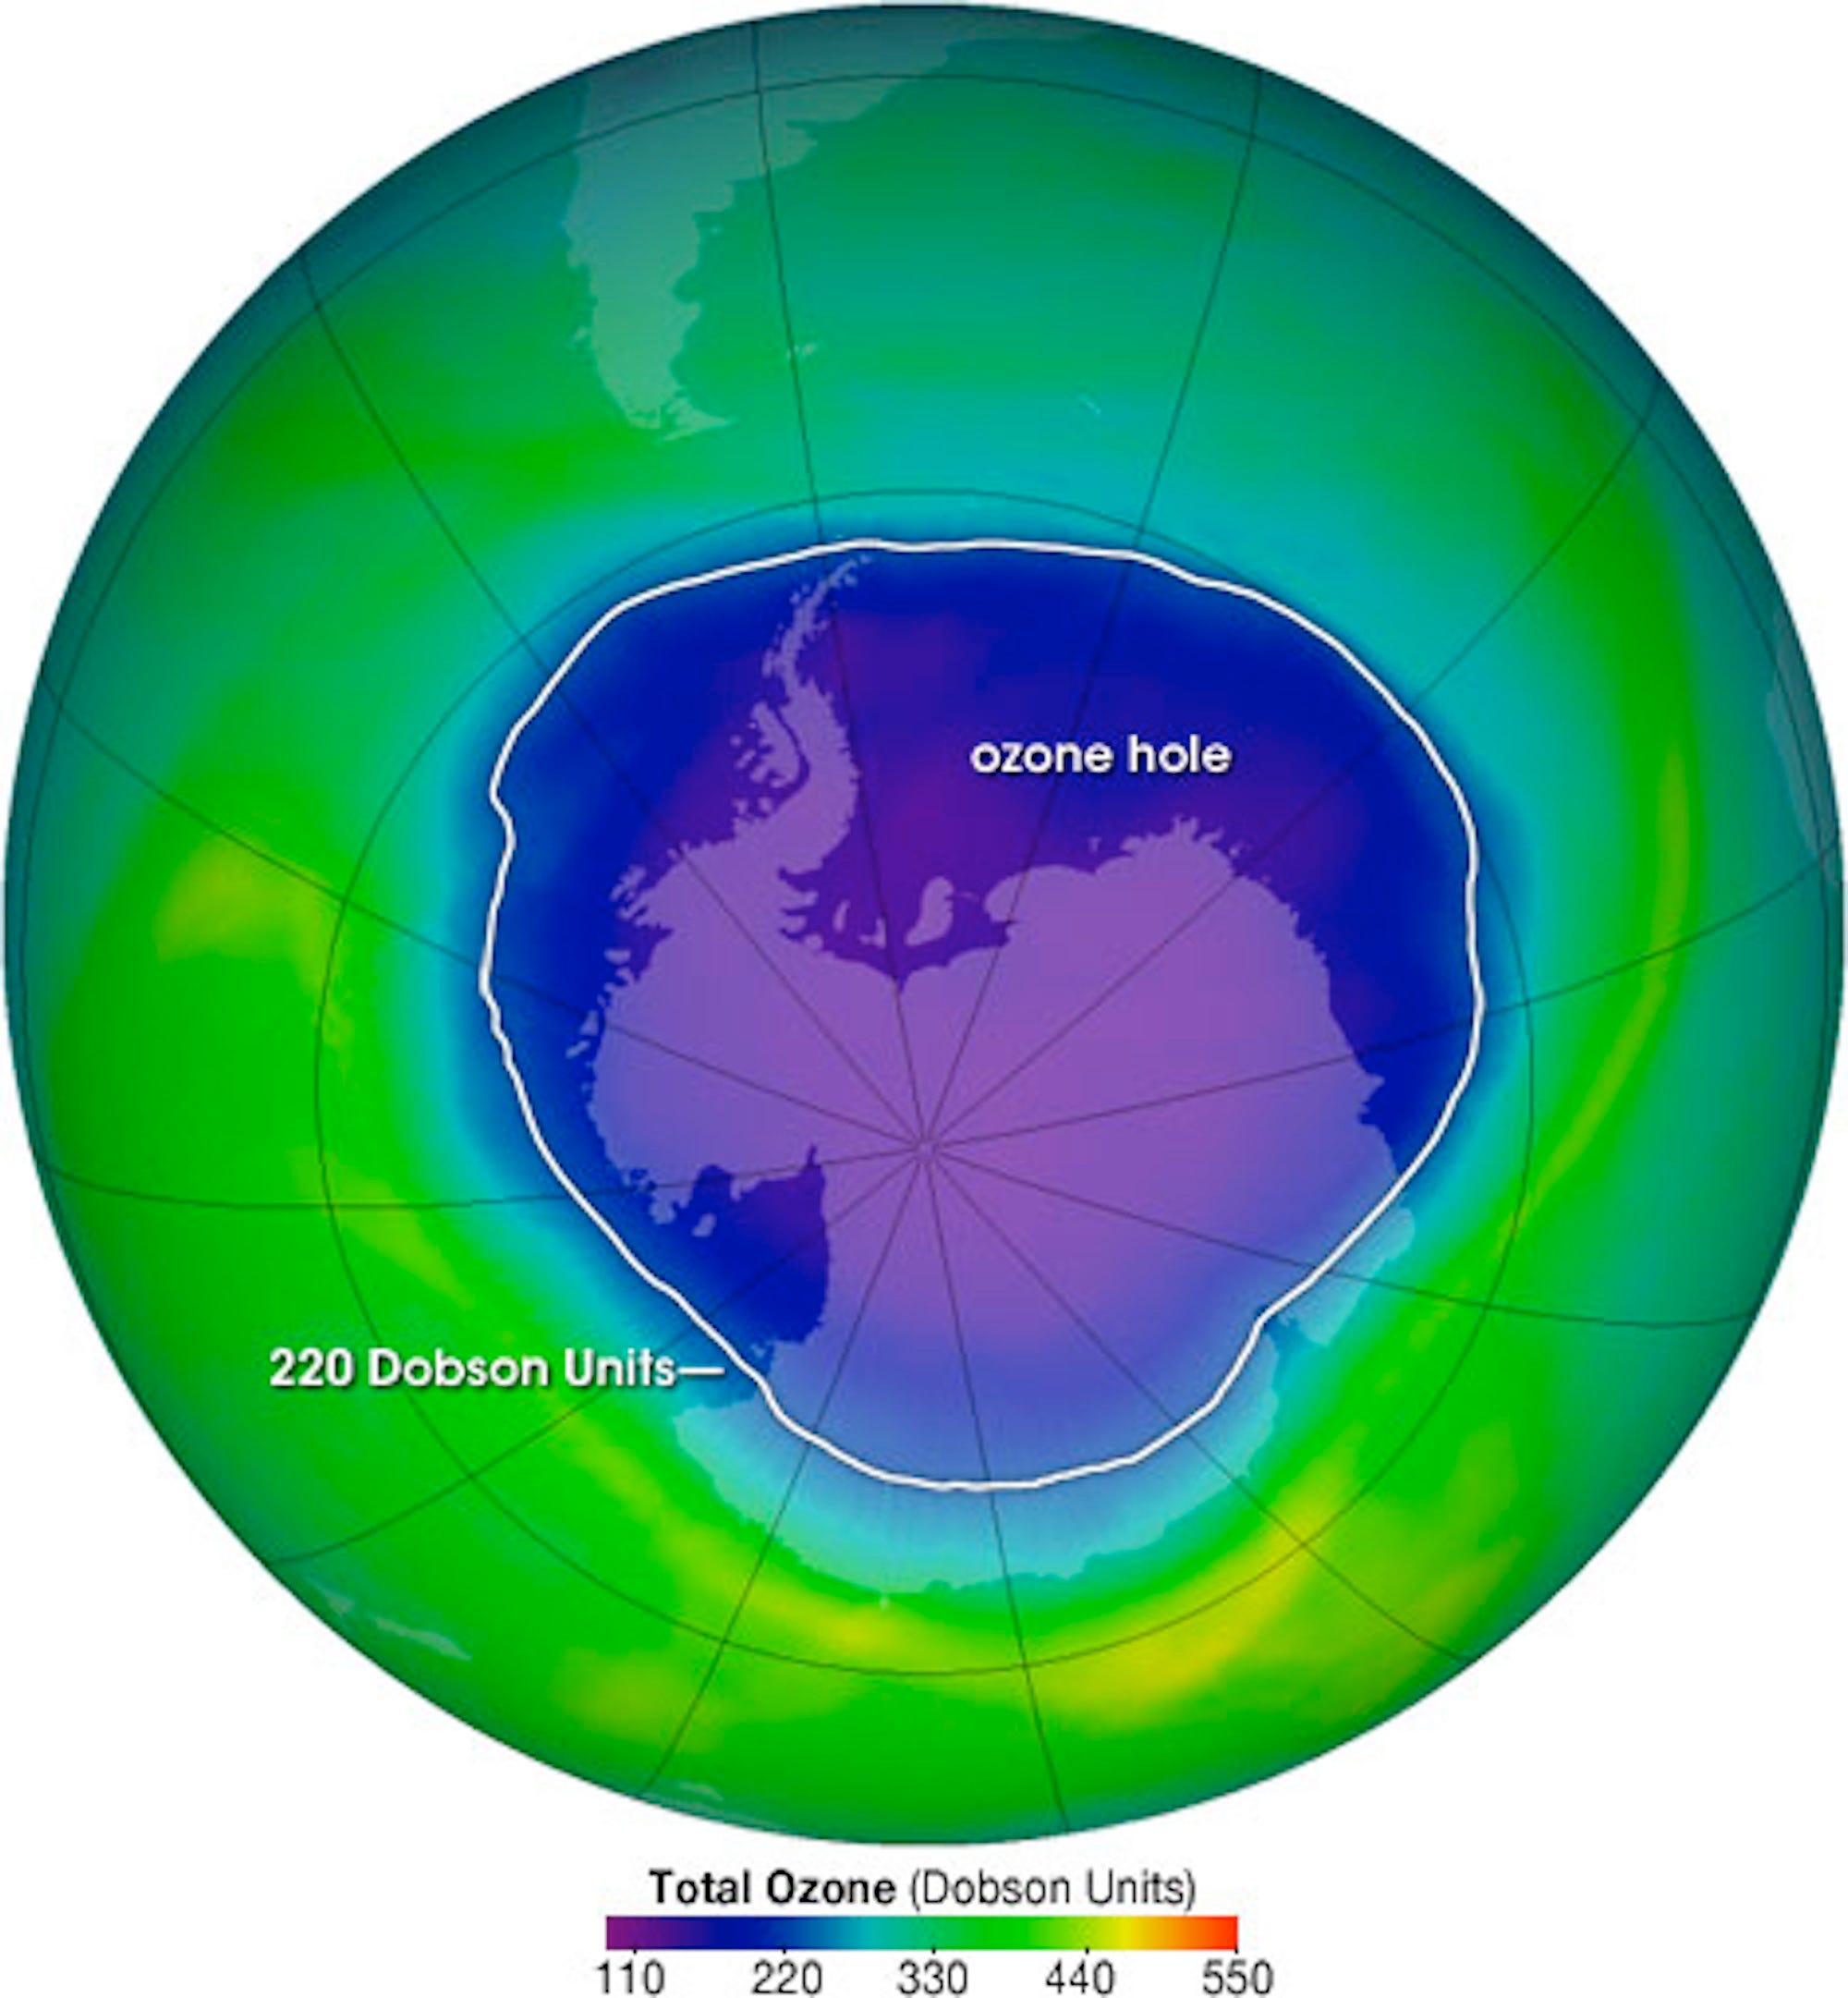 Ein Bild zeigt eine Wärmekarte der Ozonschicht rund um den Planeten.  Über einer Stange ist ein großes Loch zu sehen